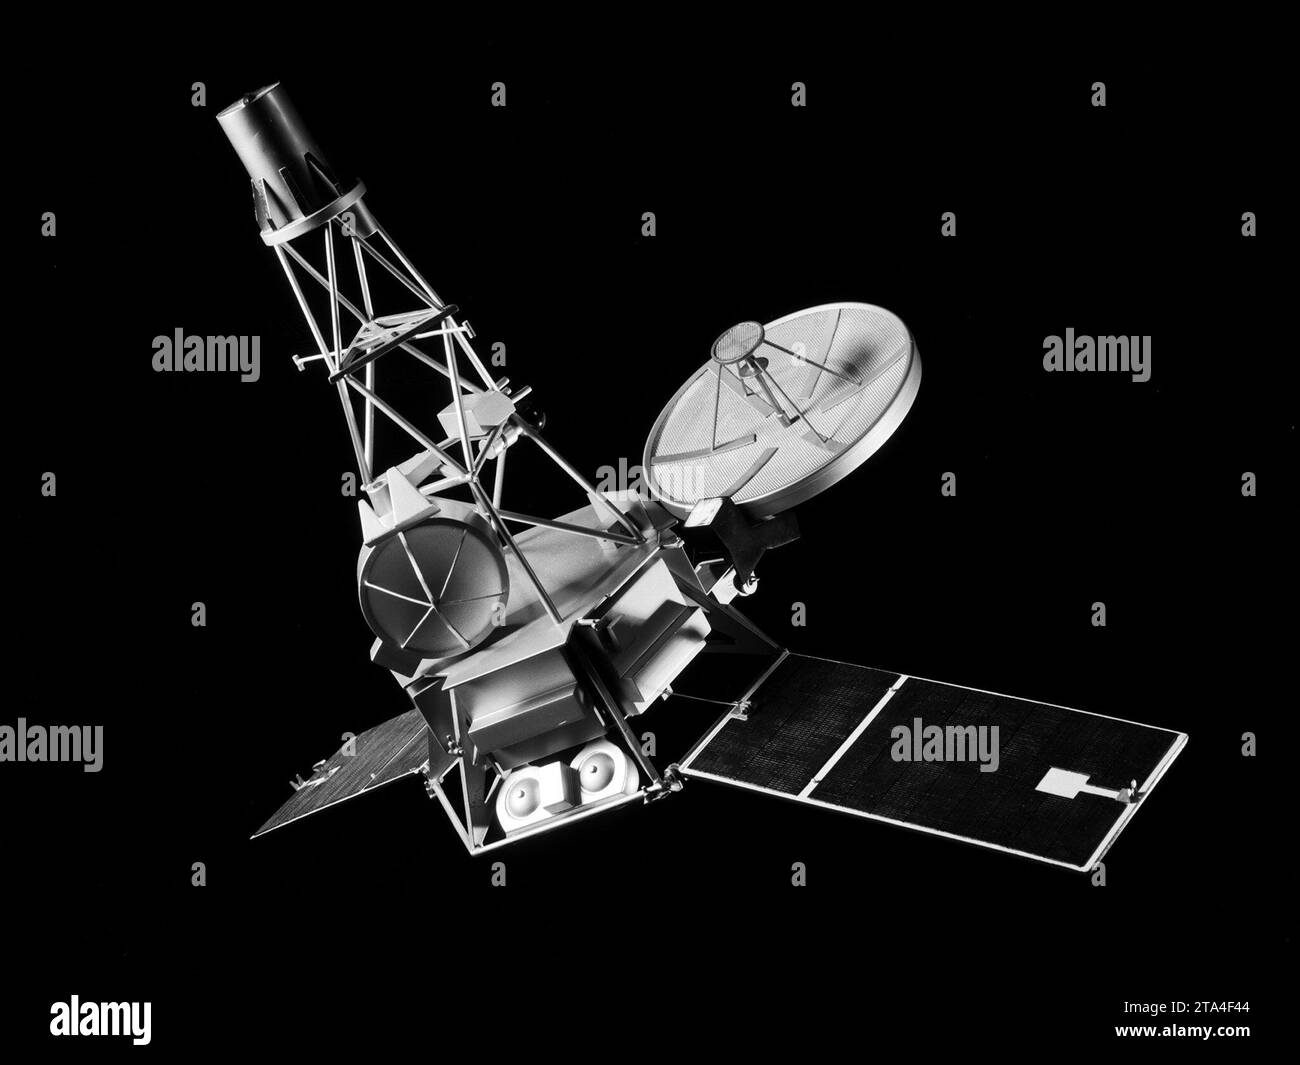 USA. 28 novembre 2023. FILE: Un modello della navicella spaziale Mariner-C presso il Lewis Research Center della National Aeronautics and Space Administration (NASA) per una conferenza sulla nuova tecnologia del giugno 1964. Mariner-C e Mariner-D erano veicoli spaziali identici progettati dal Jet Propulsion Laboratory per sorvolare Marte e fotografare la superficie marziana. Il Mariner-C è stato lanciato il 4 novembre 1964, ma il convogliatore del carico utile non è stato scaricato correttamente e l'alimentazione della batteria del veicolo spaziale non ha funzionato. La missione si è conclusa senza successo due giorni dopo. Il Mariner-D è stato lanciato come progettato il 28 novembre 1964 e divenne Foto Stock